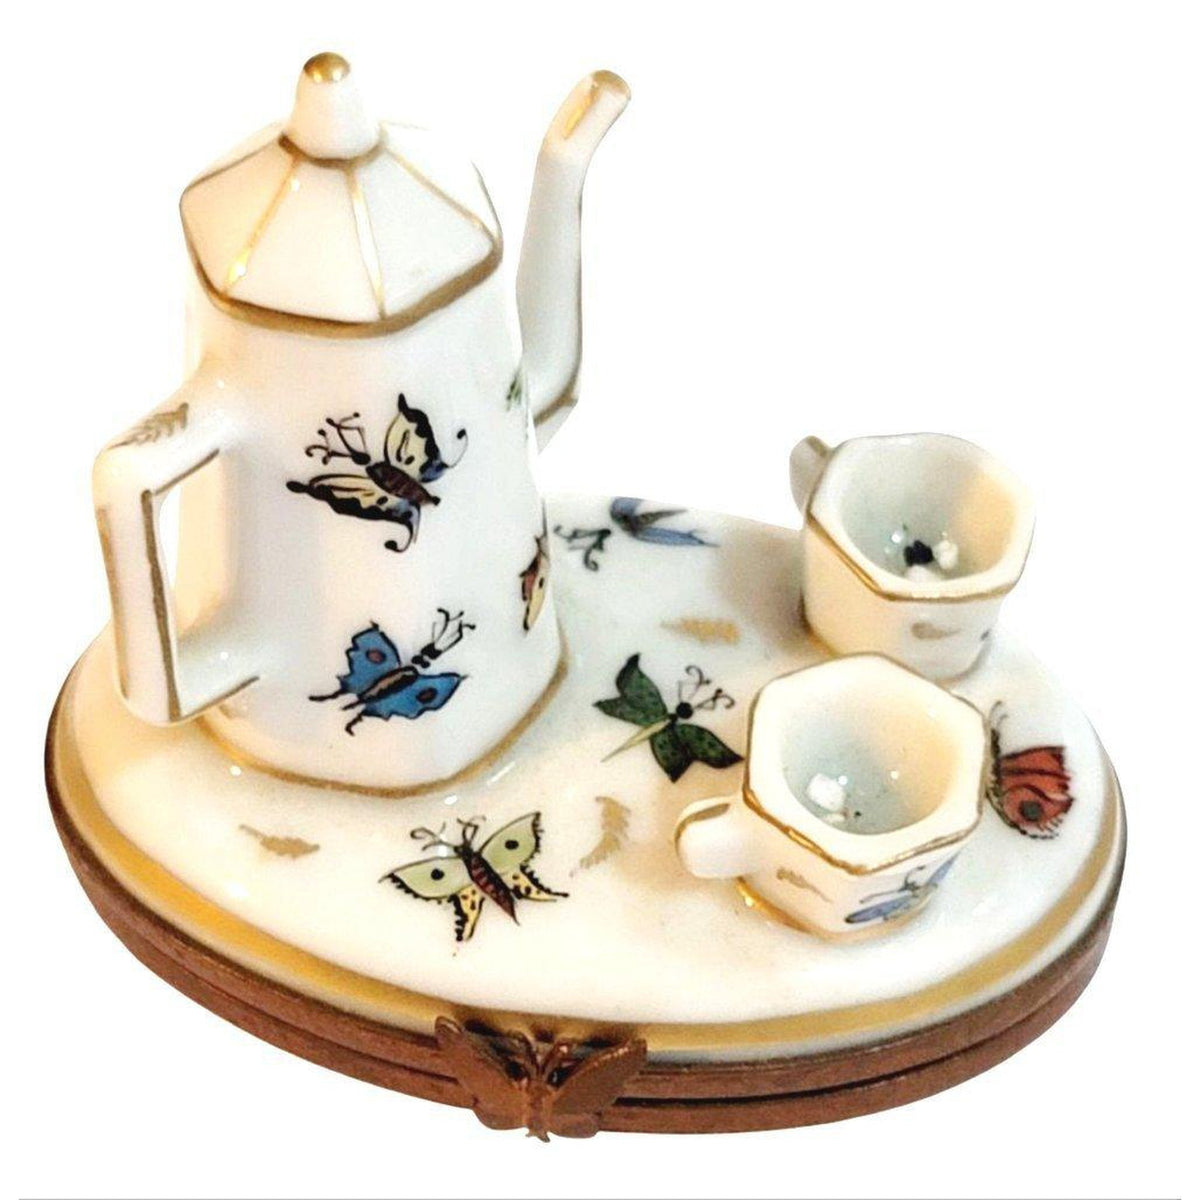 Butterflies White Tea Pot Set w Cups Butterfly Porcelain Limoges Trinket Box - Limoges Box Boutique